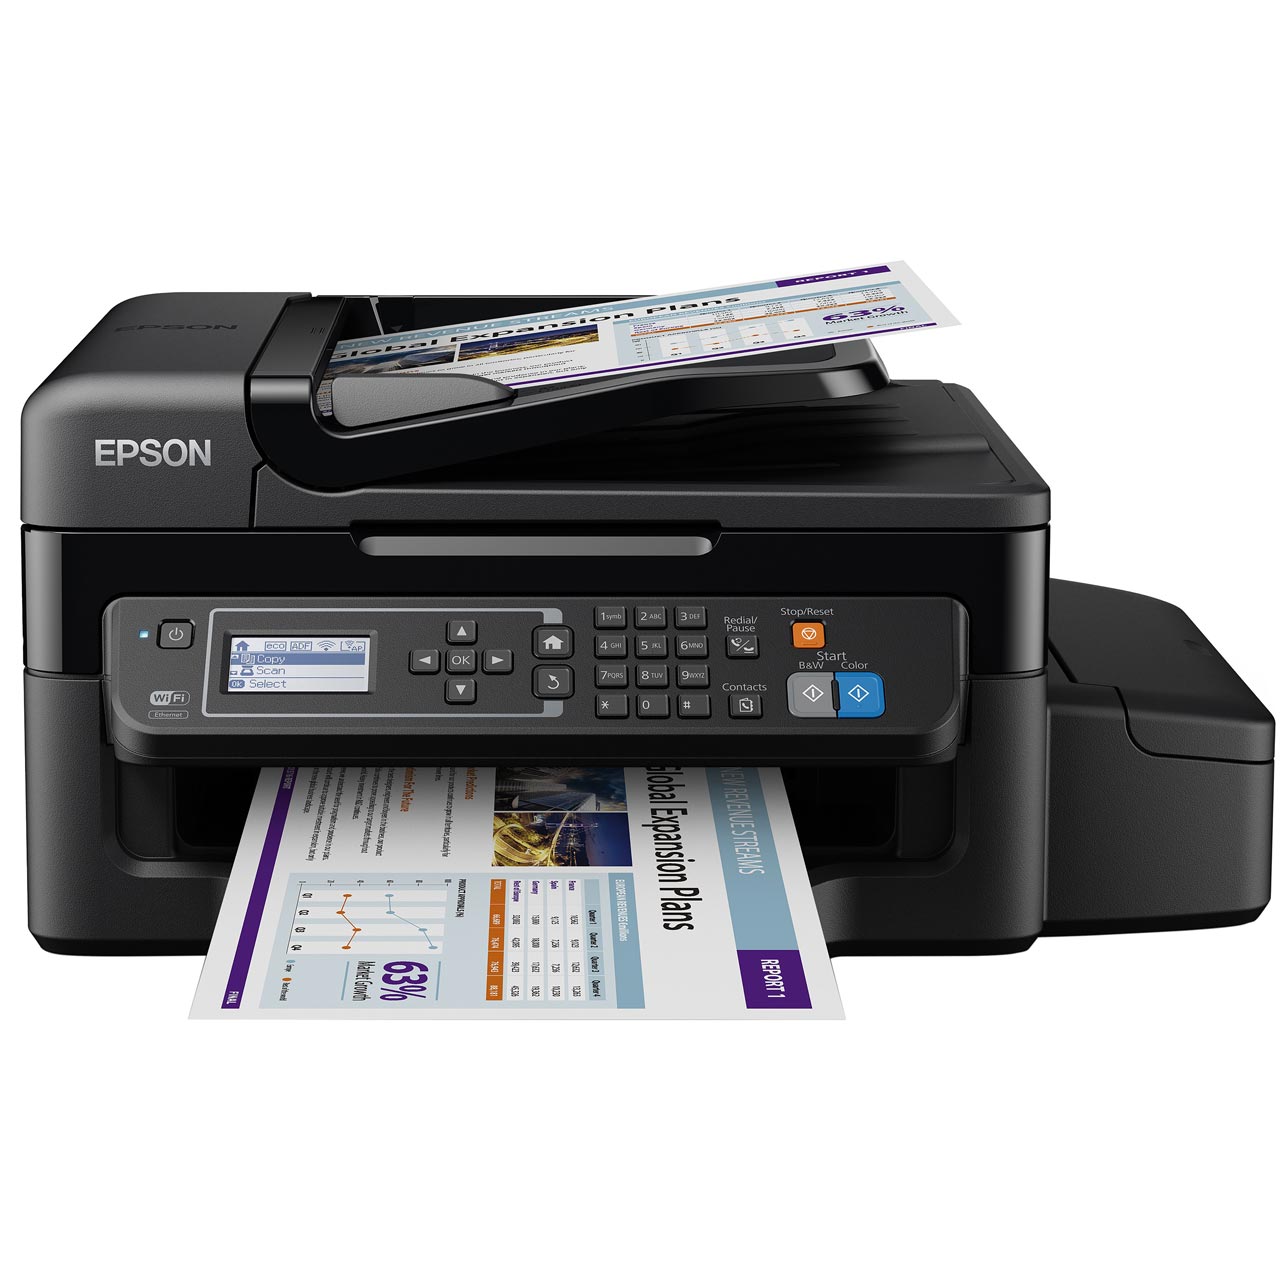  Epson  EcoTank ET 4500  Printer Review